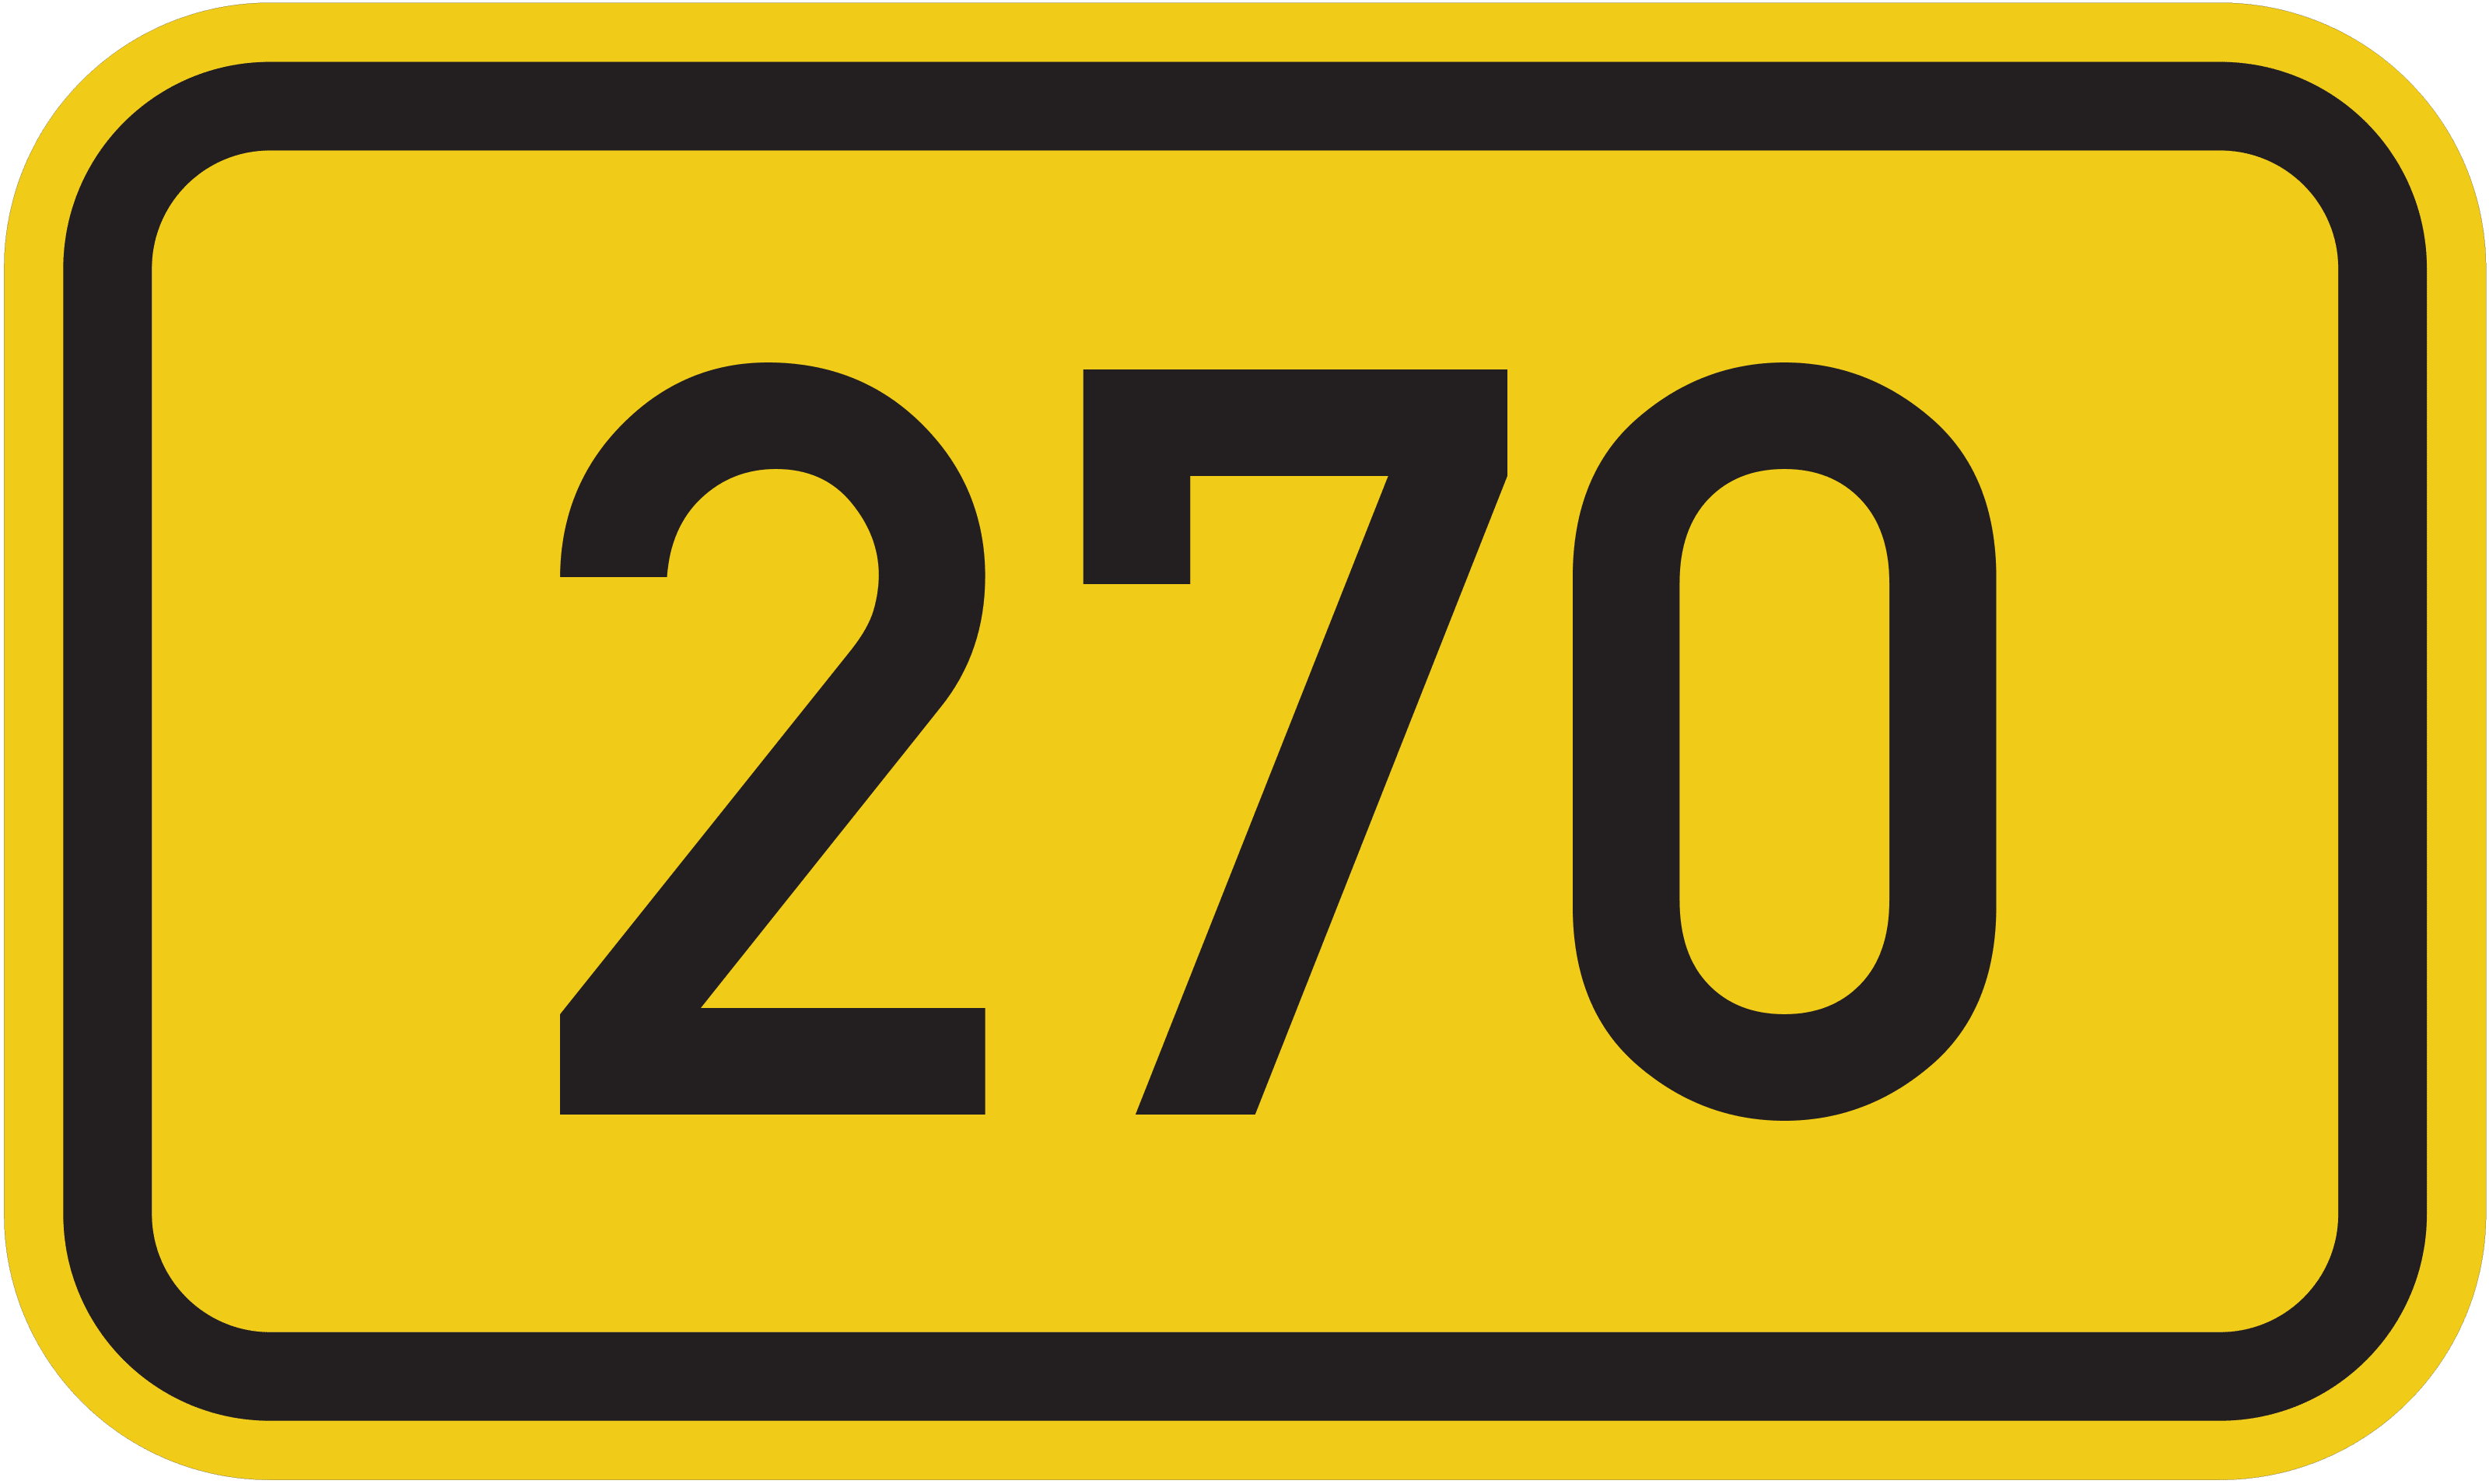 Bundesstraße B 270